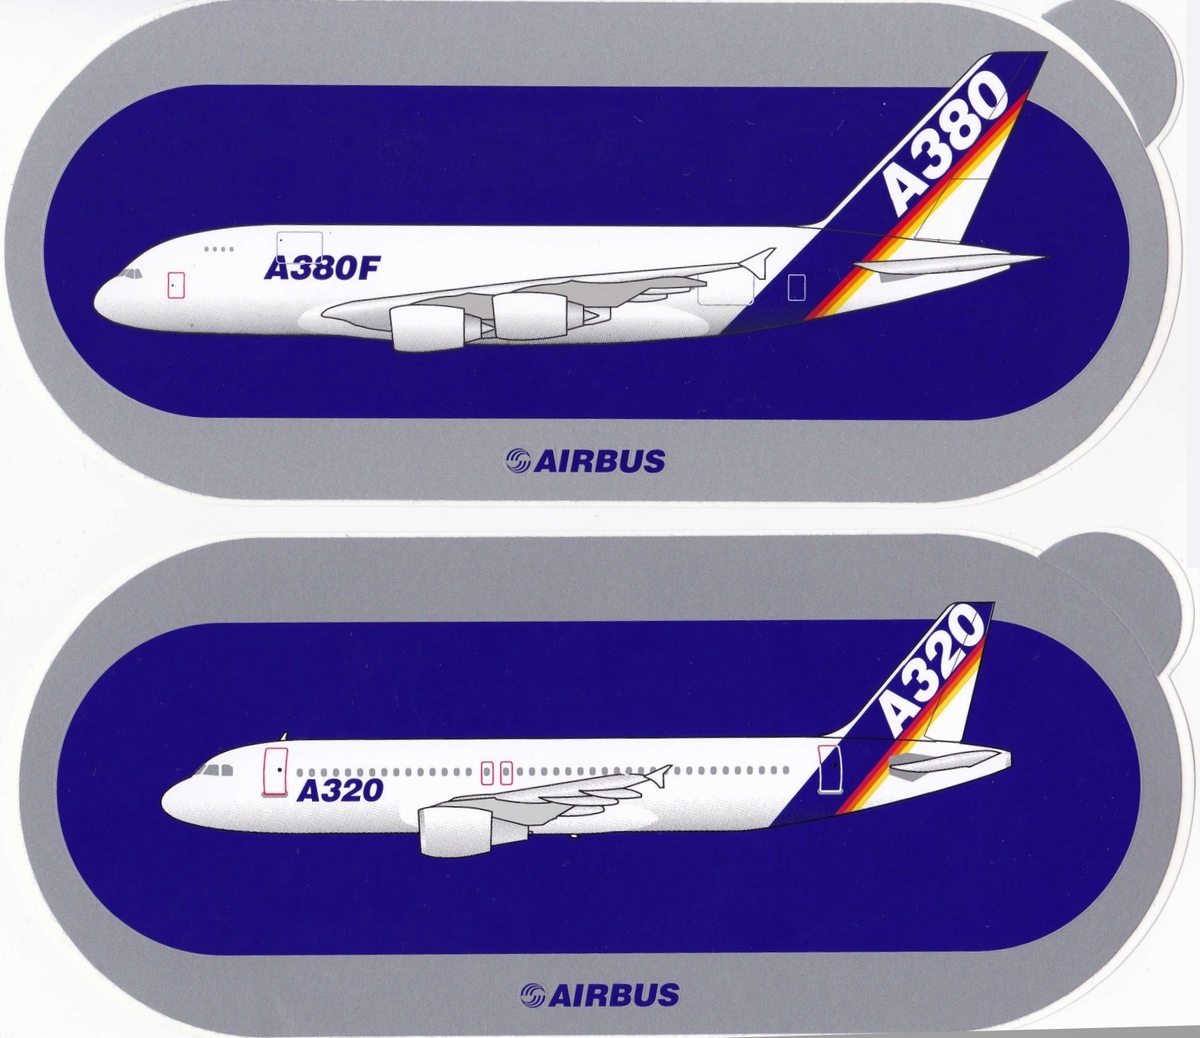 ◇ エアライングッズ・ノベルティ、その9「エアバス A380を飛ばして